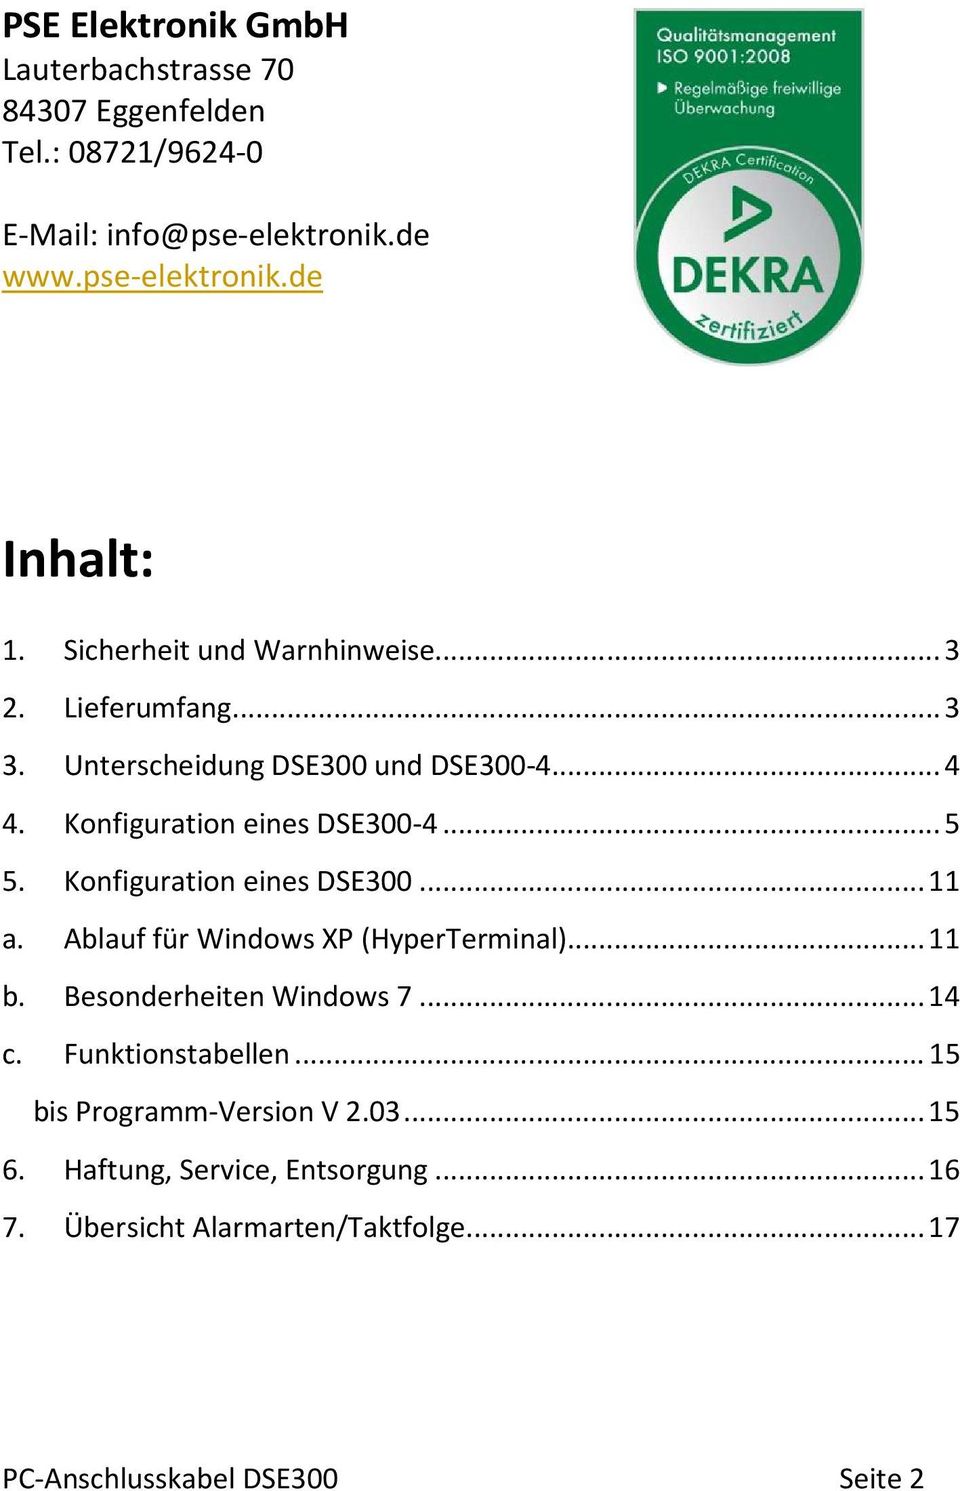 Konfiguration eines DSE300... 11 a. Ablauf für Windows XP (HyperTerminal)... 11 b. Besonderheiten Windows 7... 14 c. Funktionstabellen.